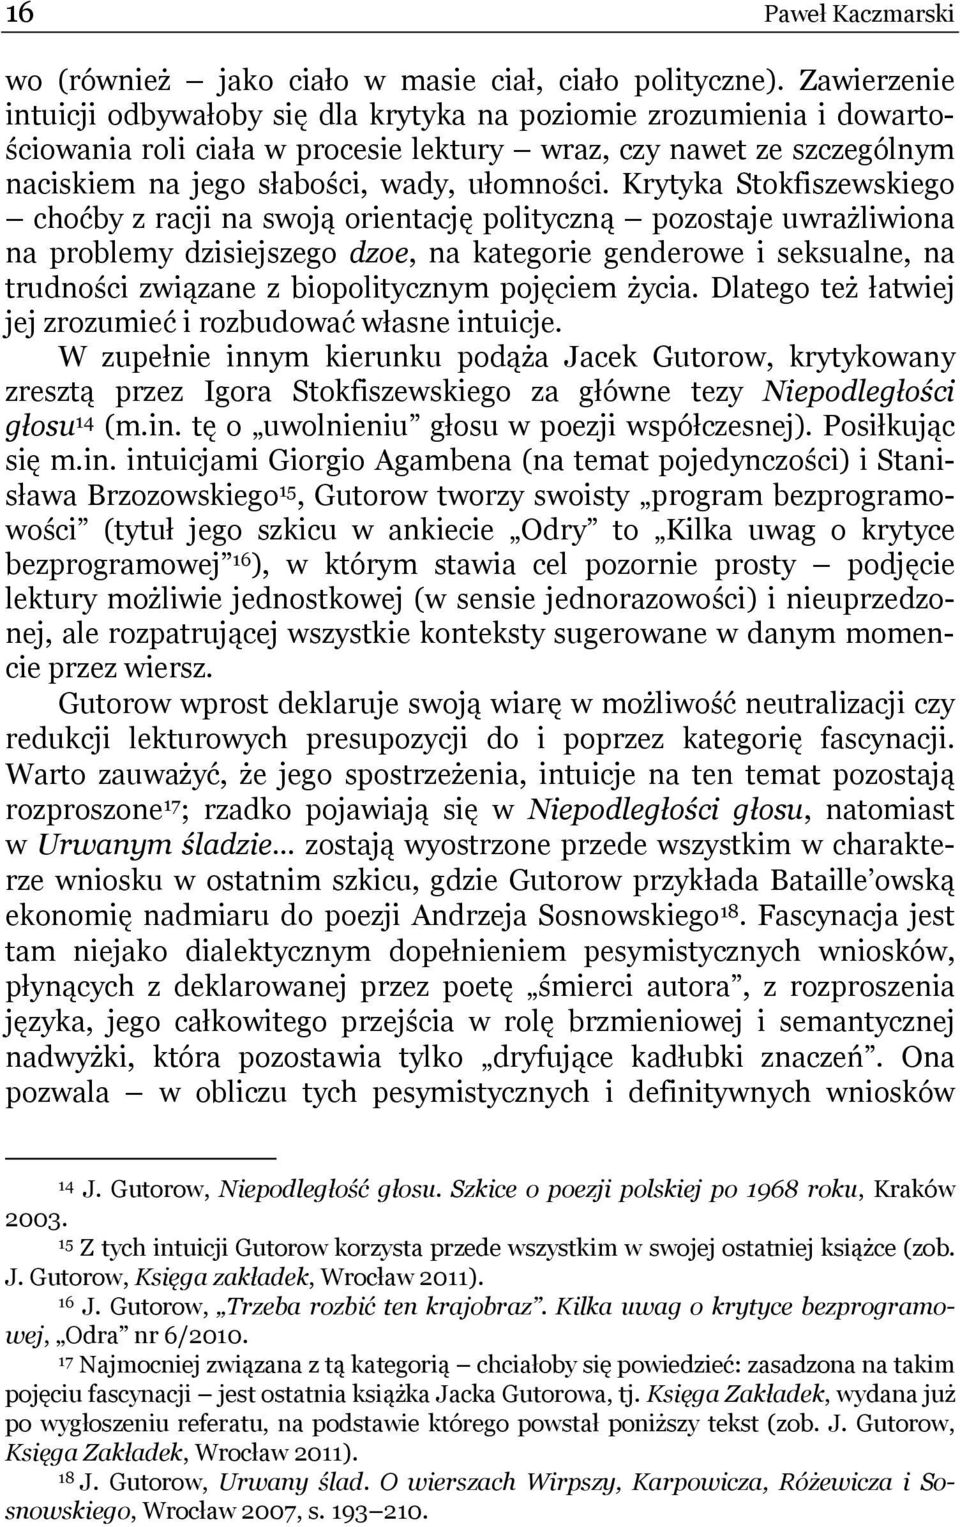 Krytyka Stokfiszewskiego choćby z racji na swoją orientację polityczną pozostaje uwrażliwiona na problemy dzisiejszego dzoe, na kategorie genderowe i seksualne, na trudności związane z biopolitycznym